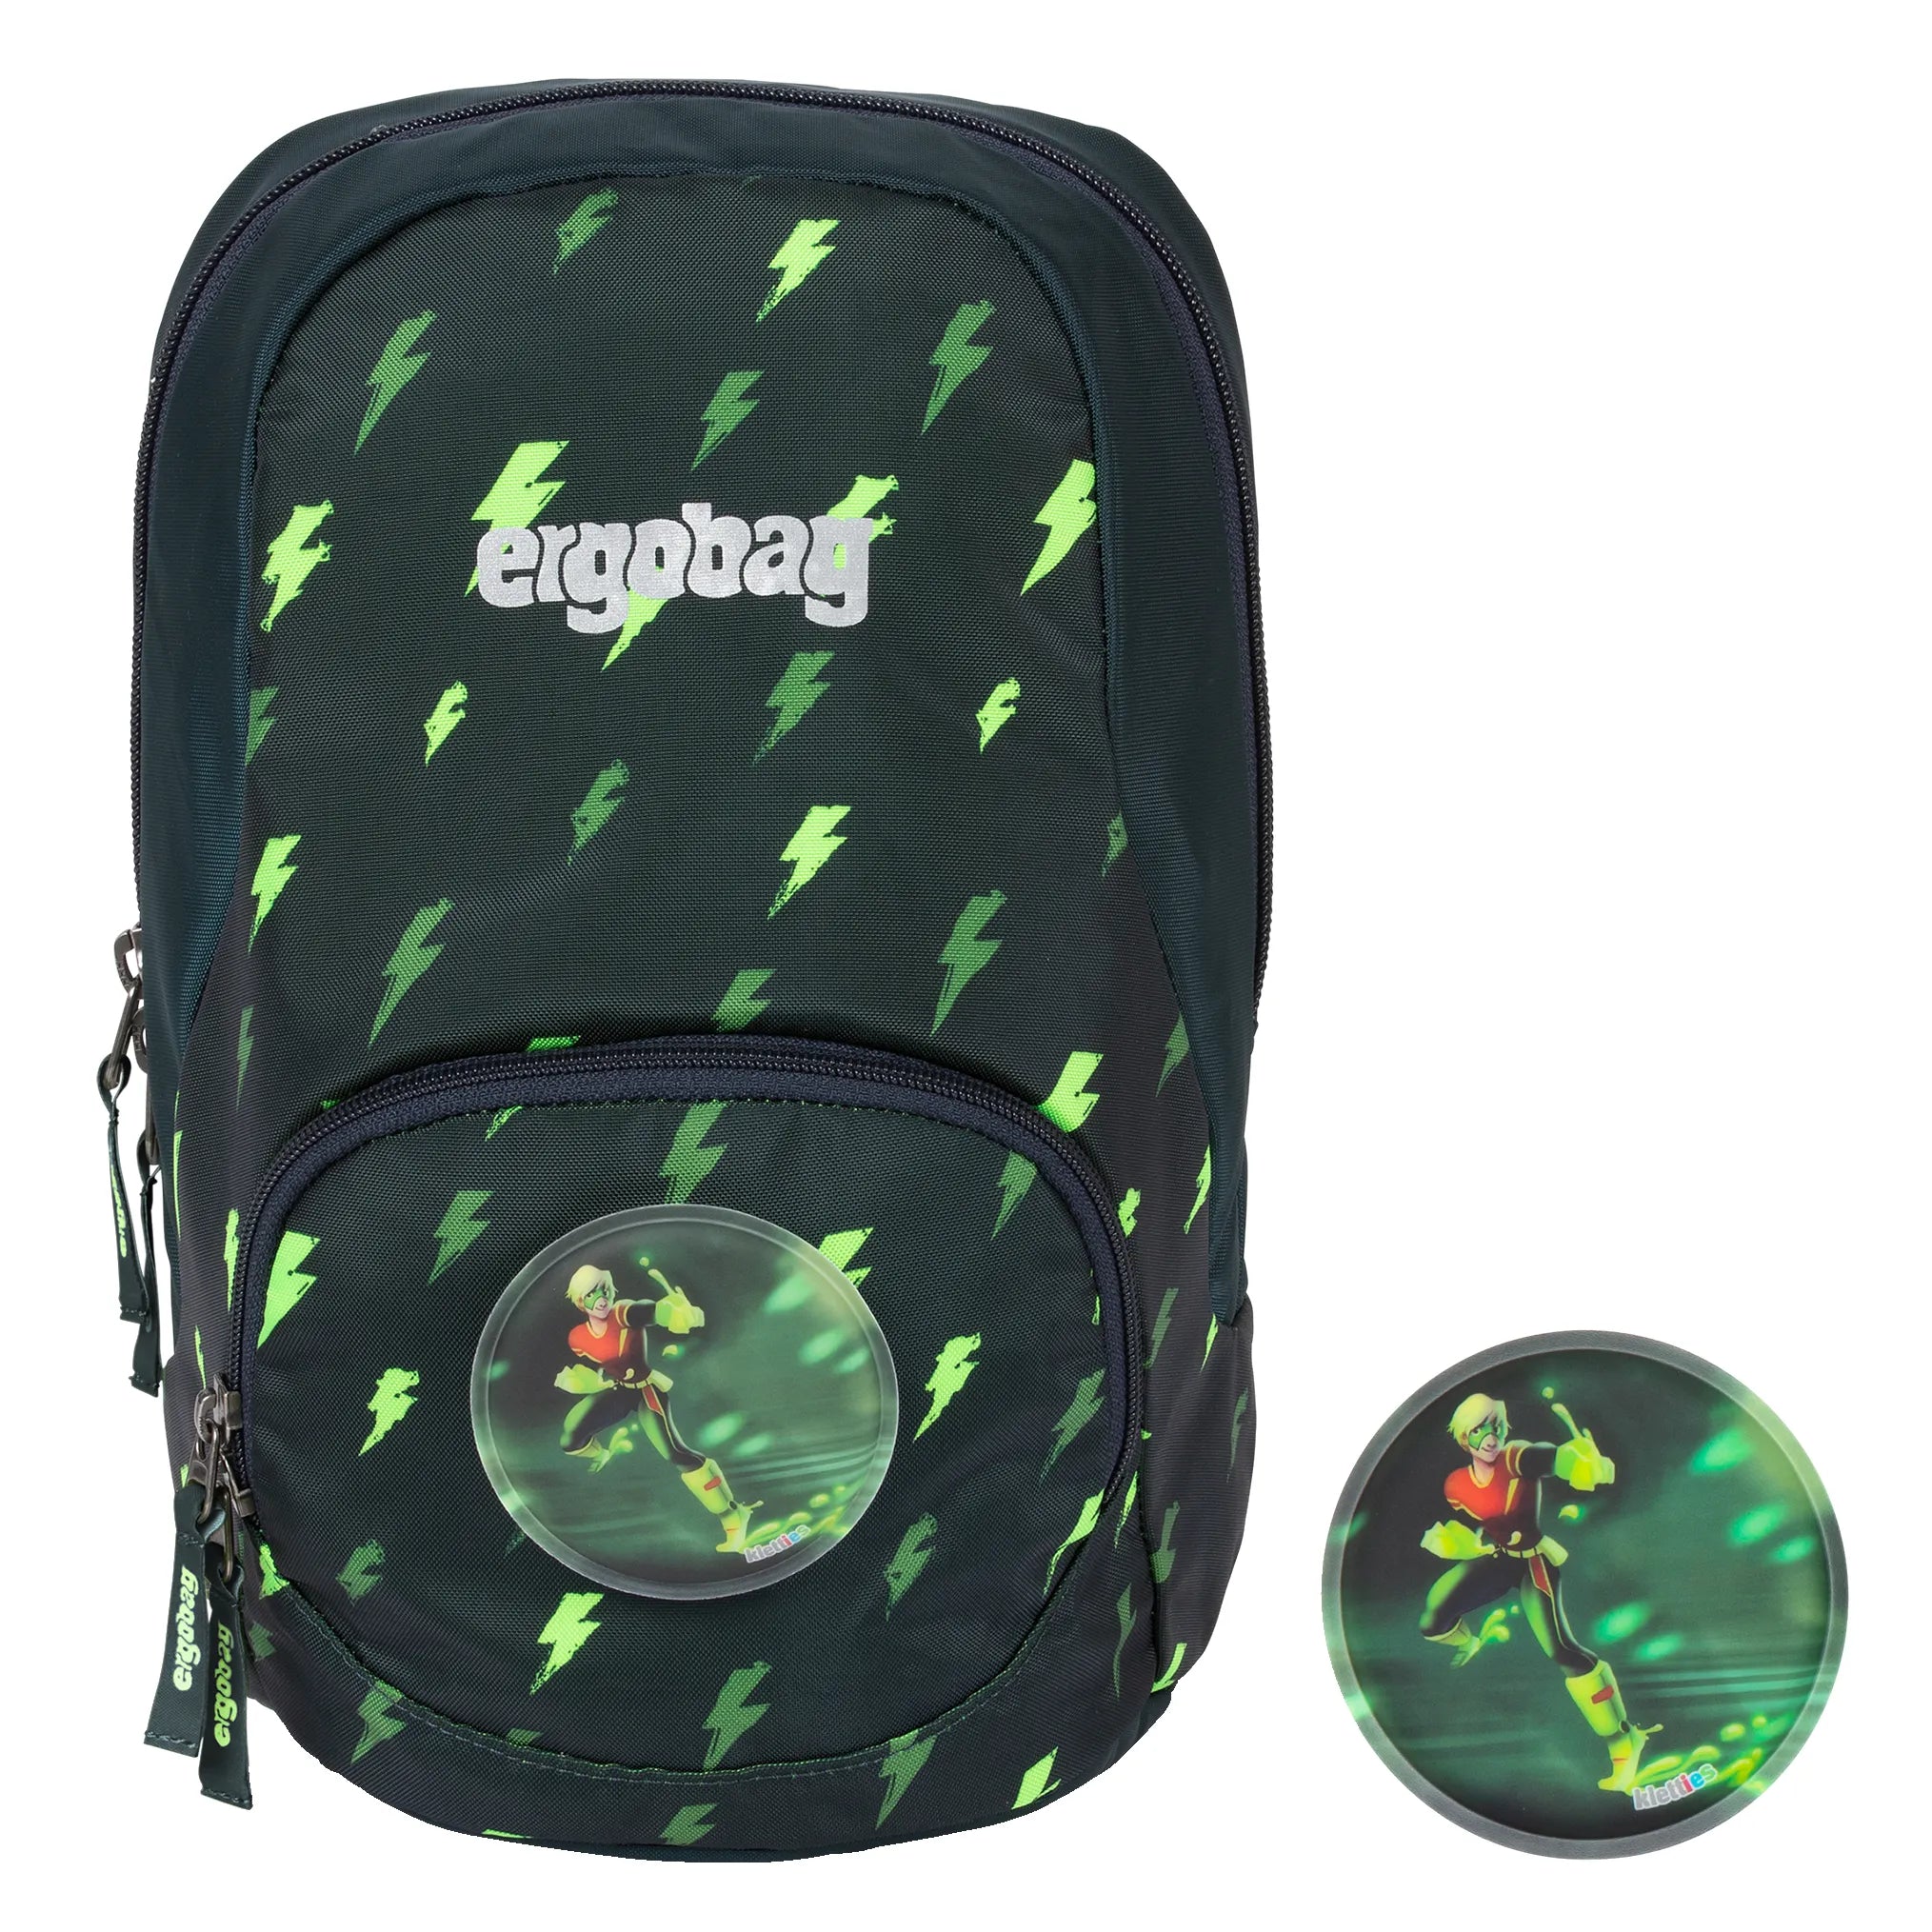 Ergobag Ease Small children's backpack 30 cm - flash light